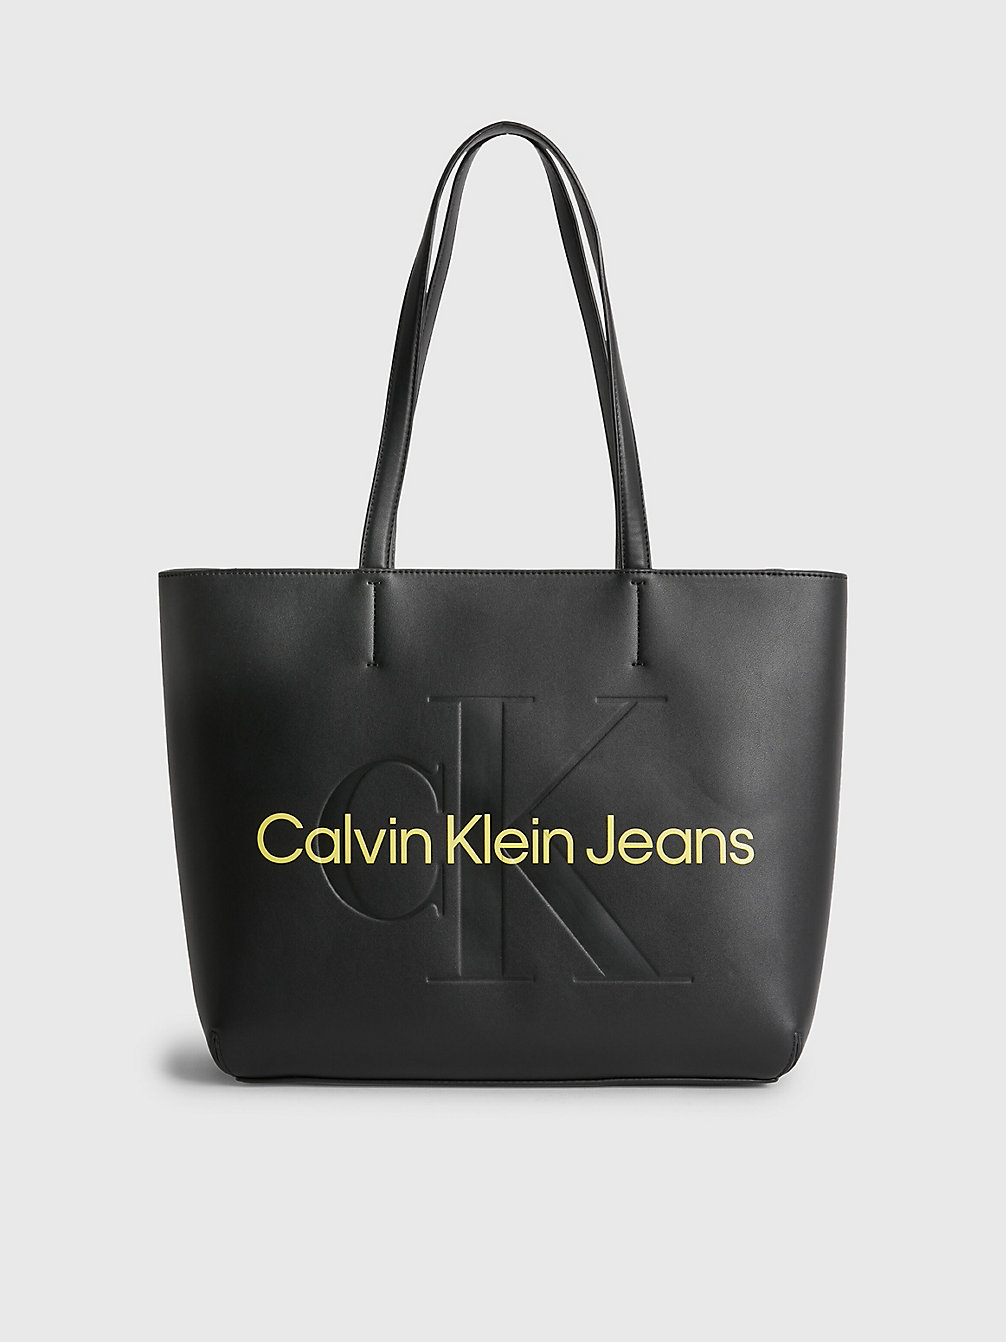 Introducir 59+ imagen calvin klein handbags new collection